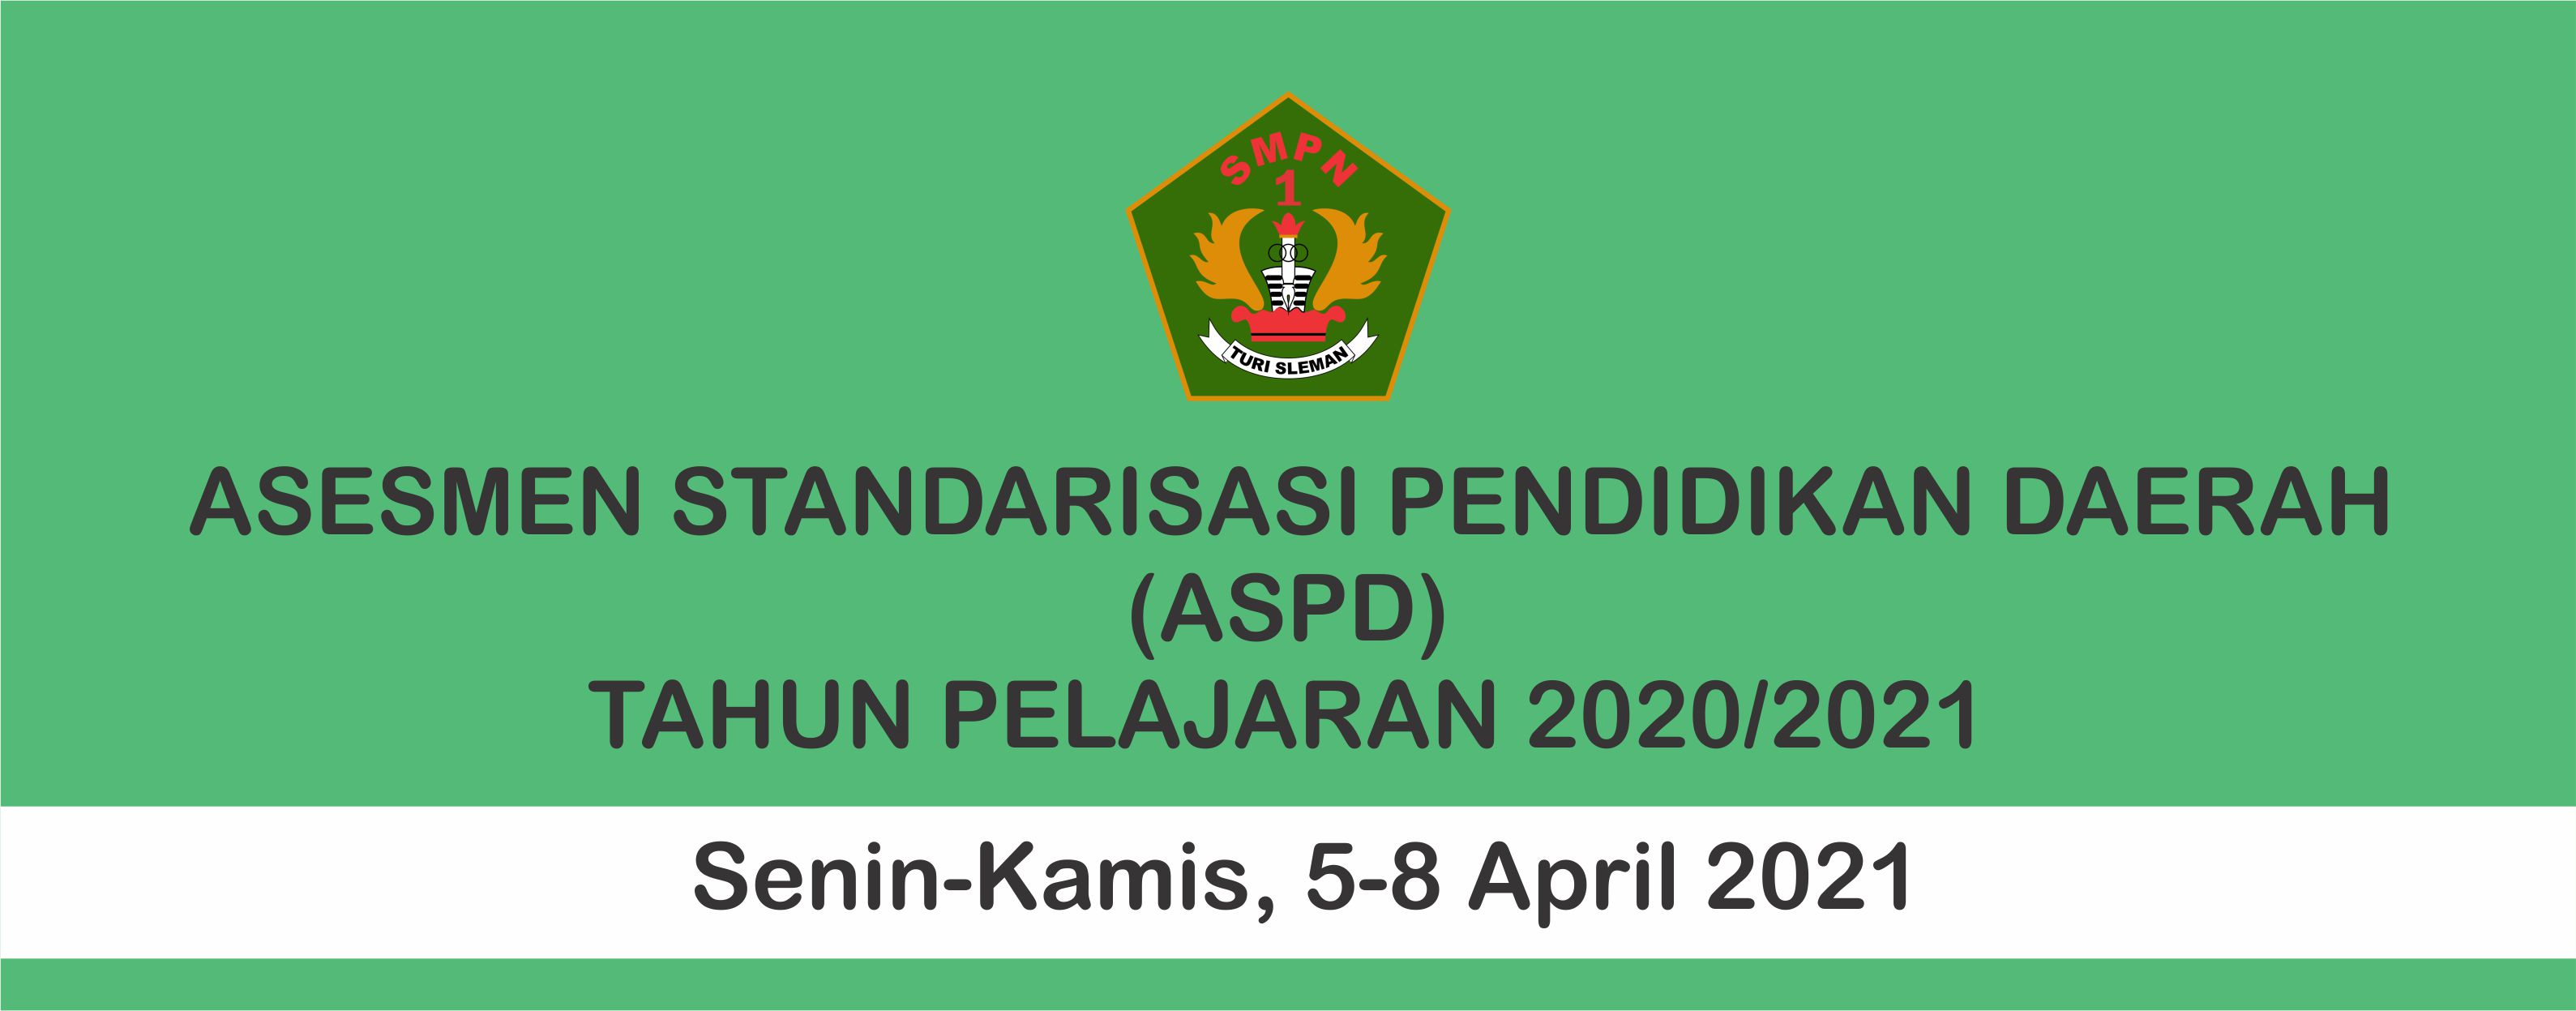 Asesmen Standarisasi Pendidikan Daerah (APSD)